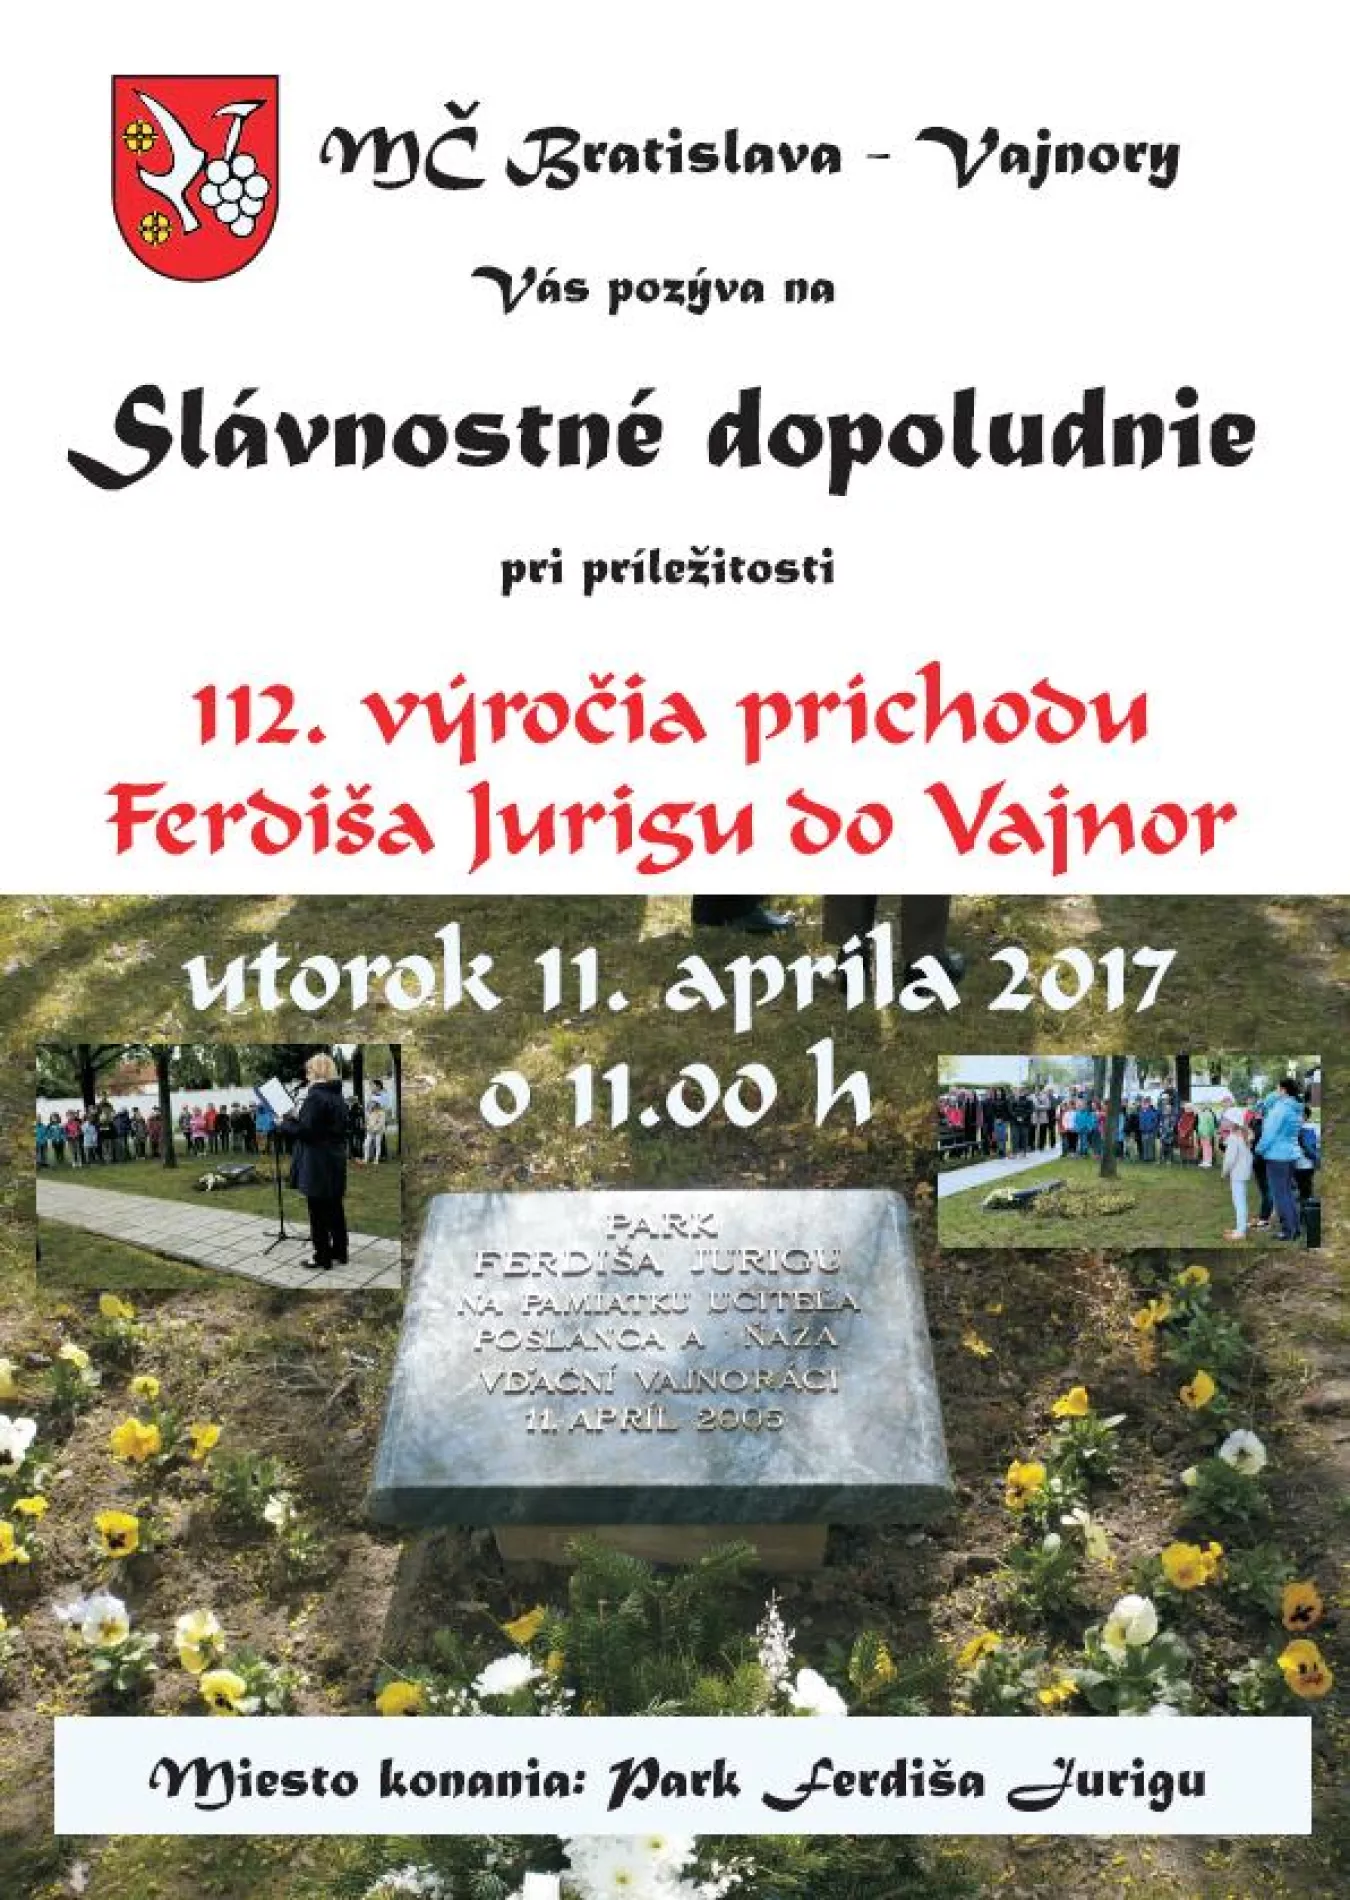 Slávnostné dopoludnie - Ferdiš Juriga 11. apríla 2017